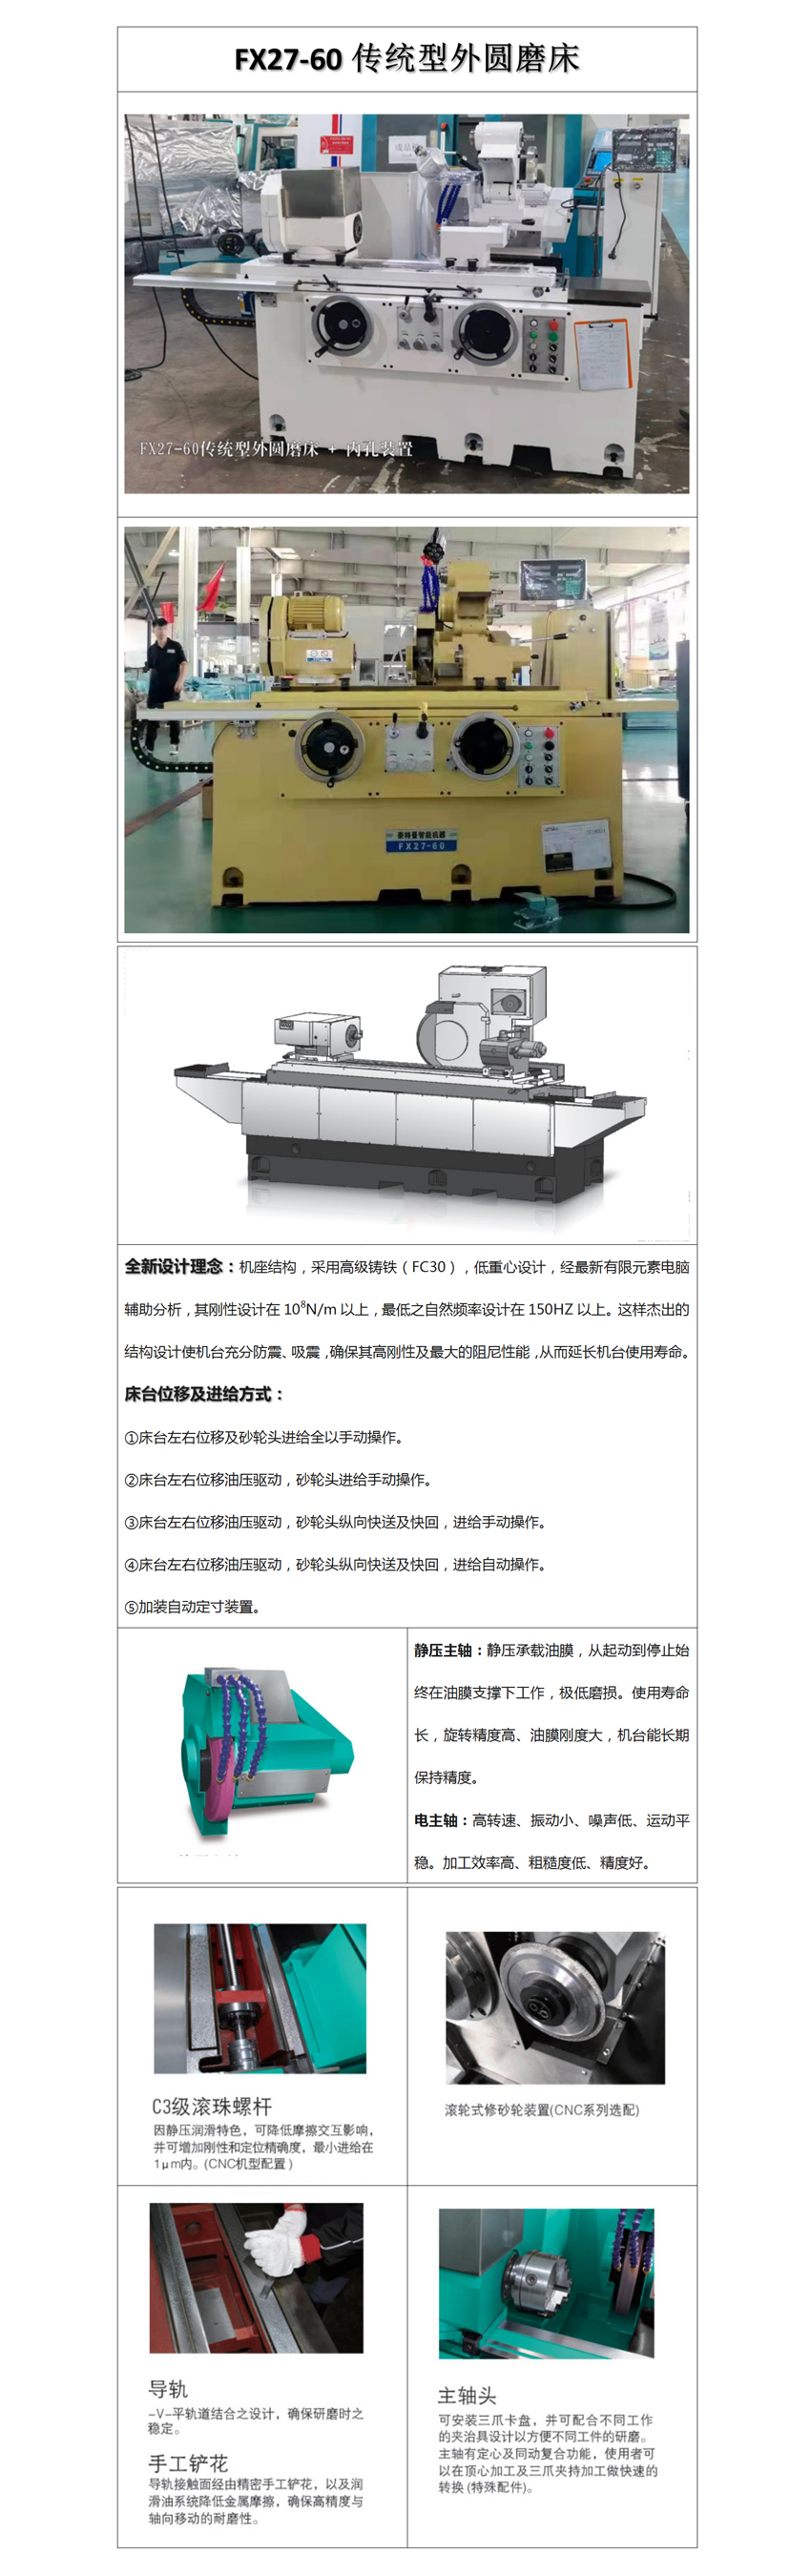 FX27-60传统型外圆磨床产品详情页